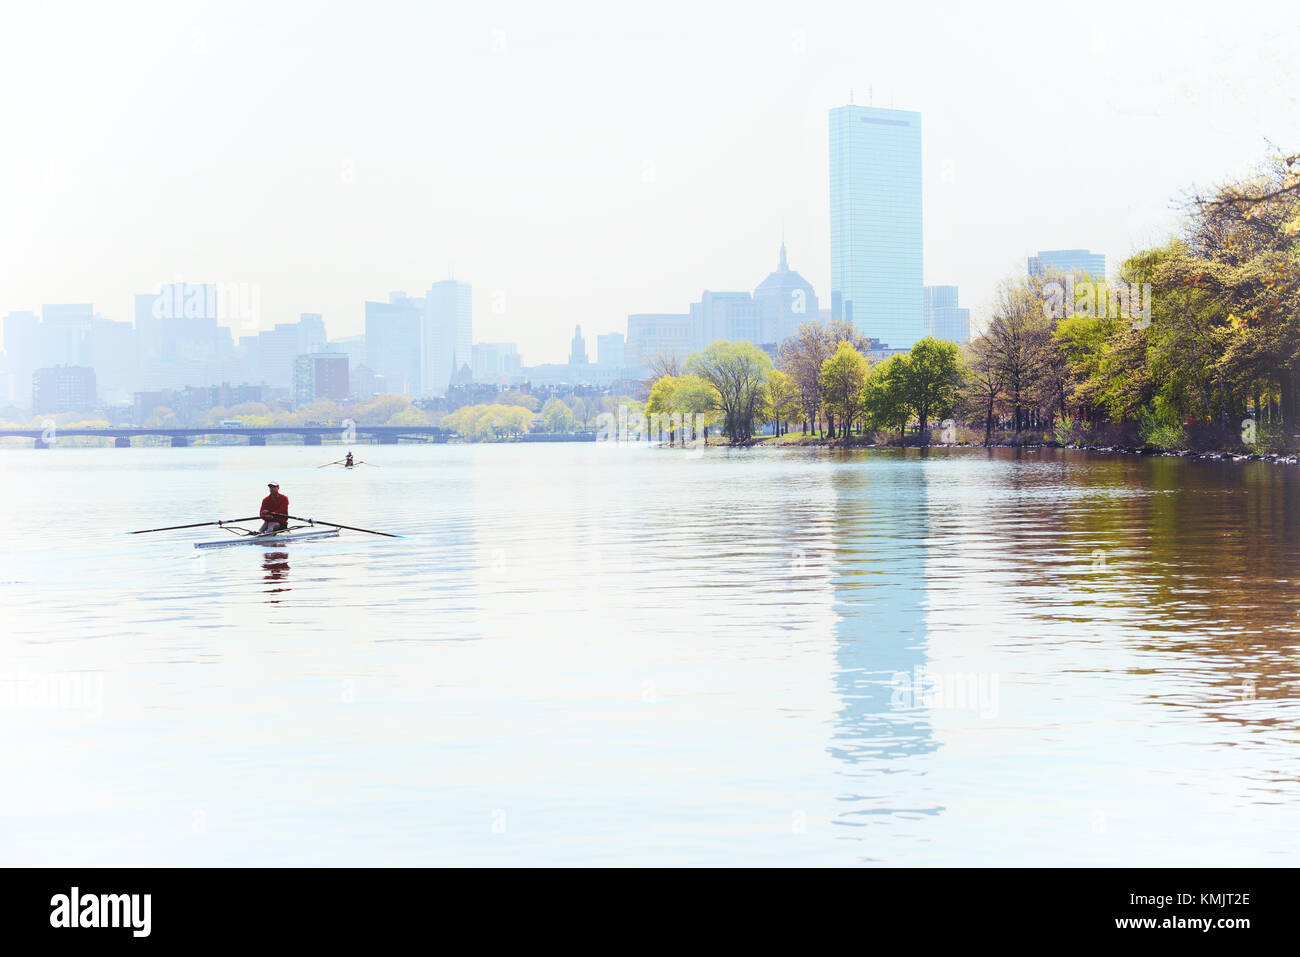 Nebeliger morgen in Boston. Ruderer in Charles River, City Skyline im Hintergrund. Stockfoto